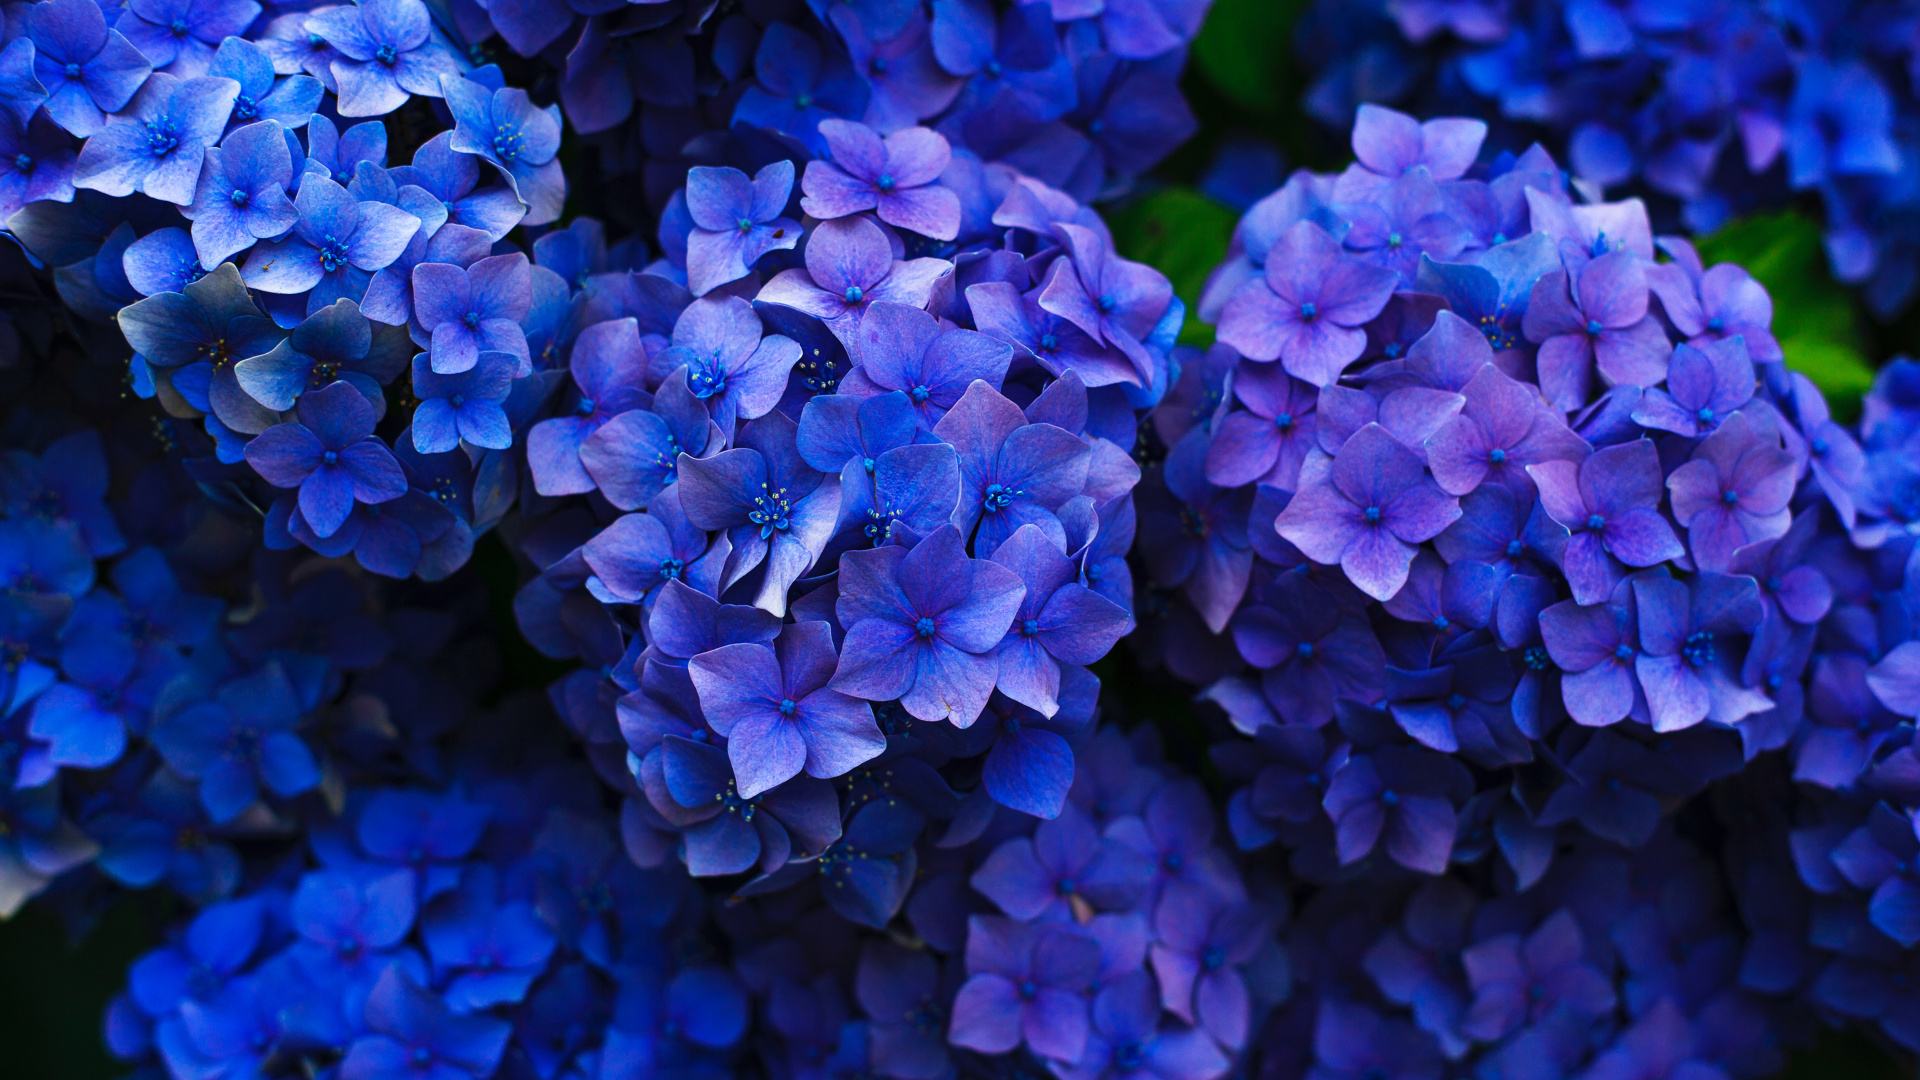 法国的绣球花, 灌木, 钴蓝色的, 紫色的, 紫罗兰色 壁纸 1920x1080 允许